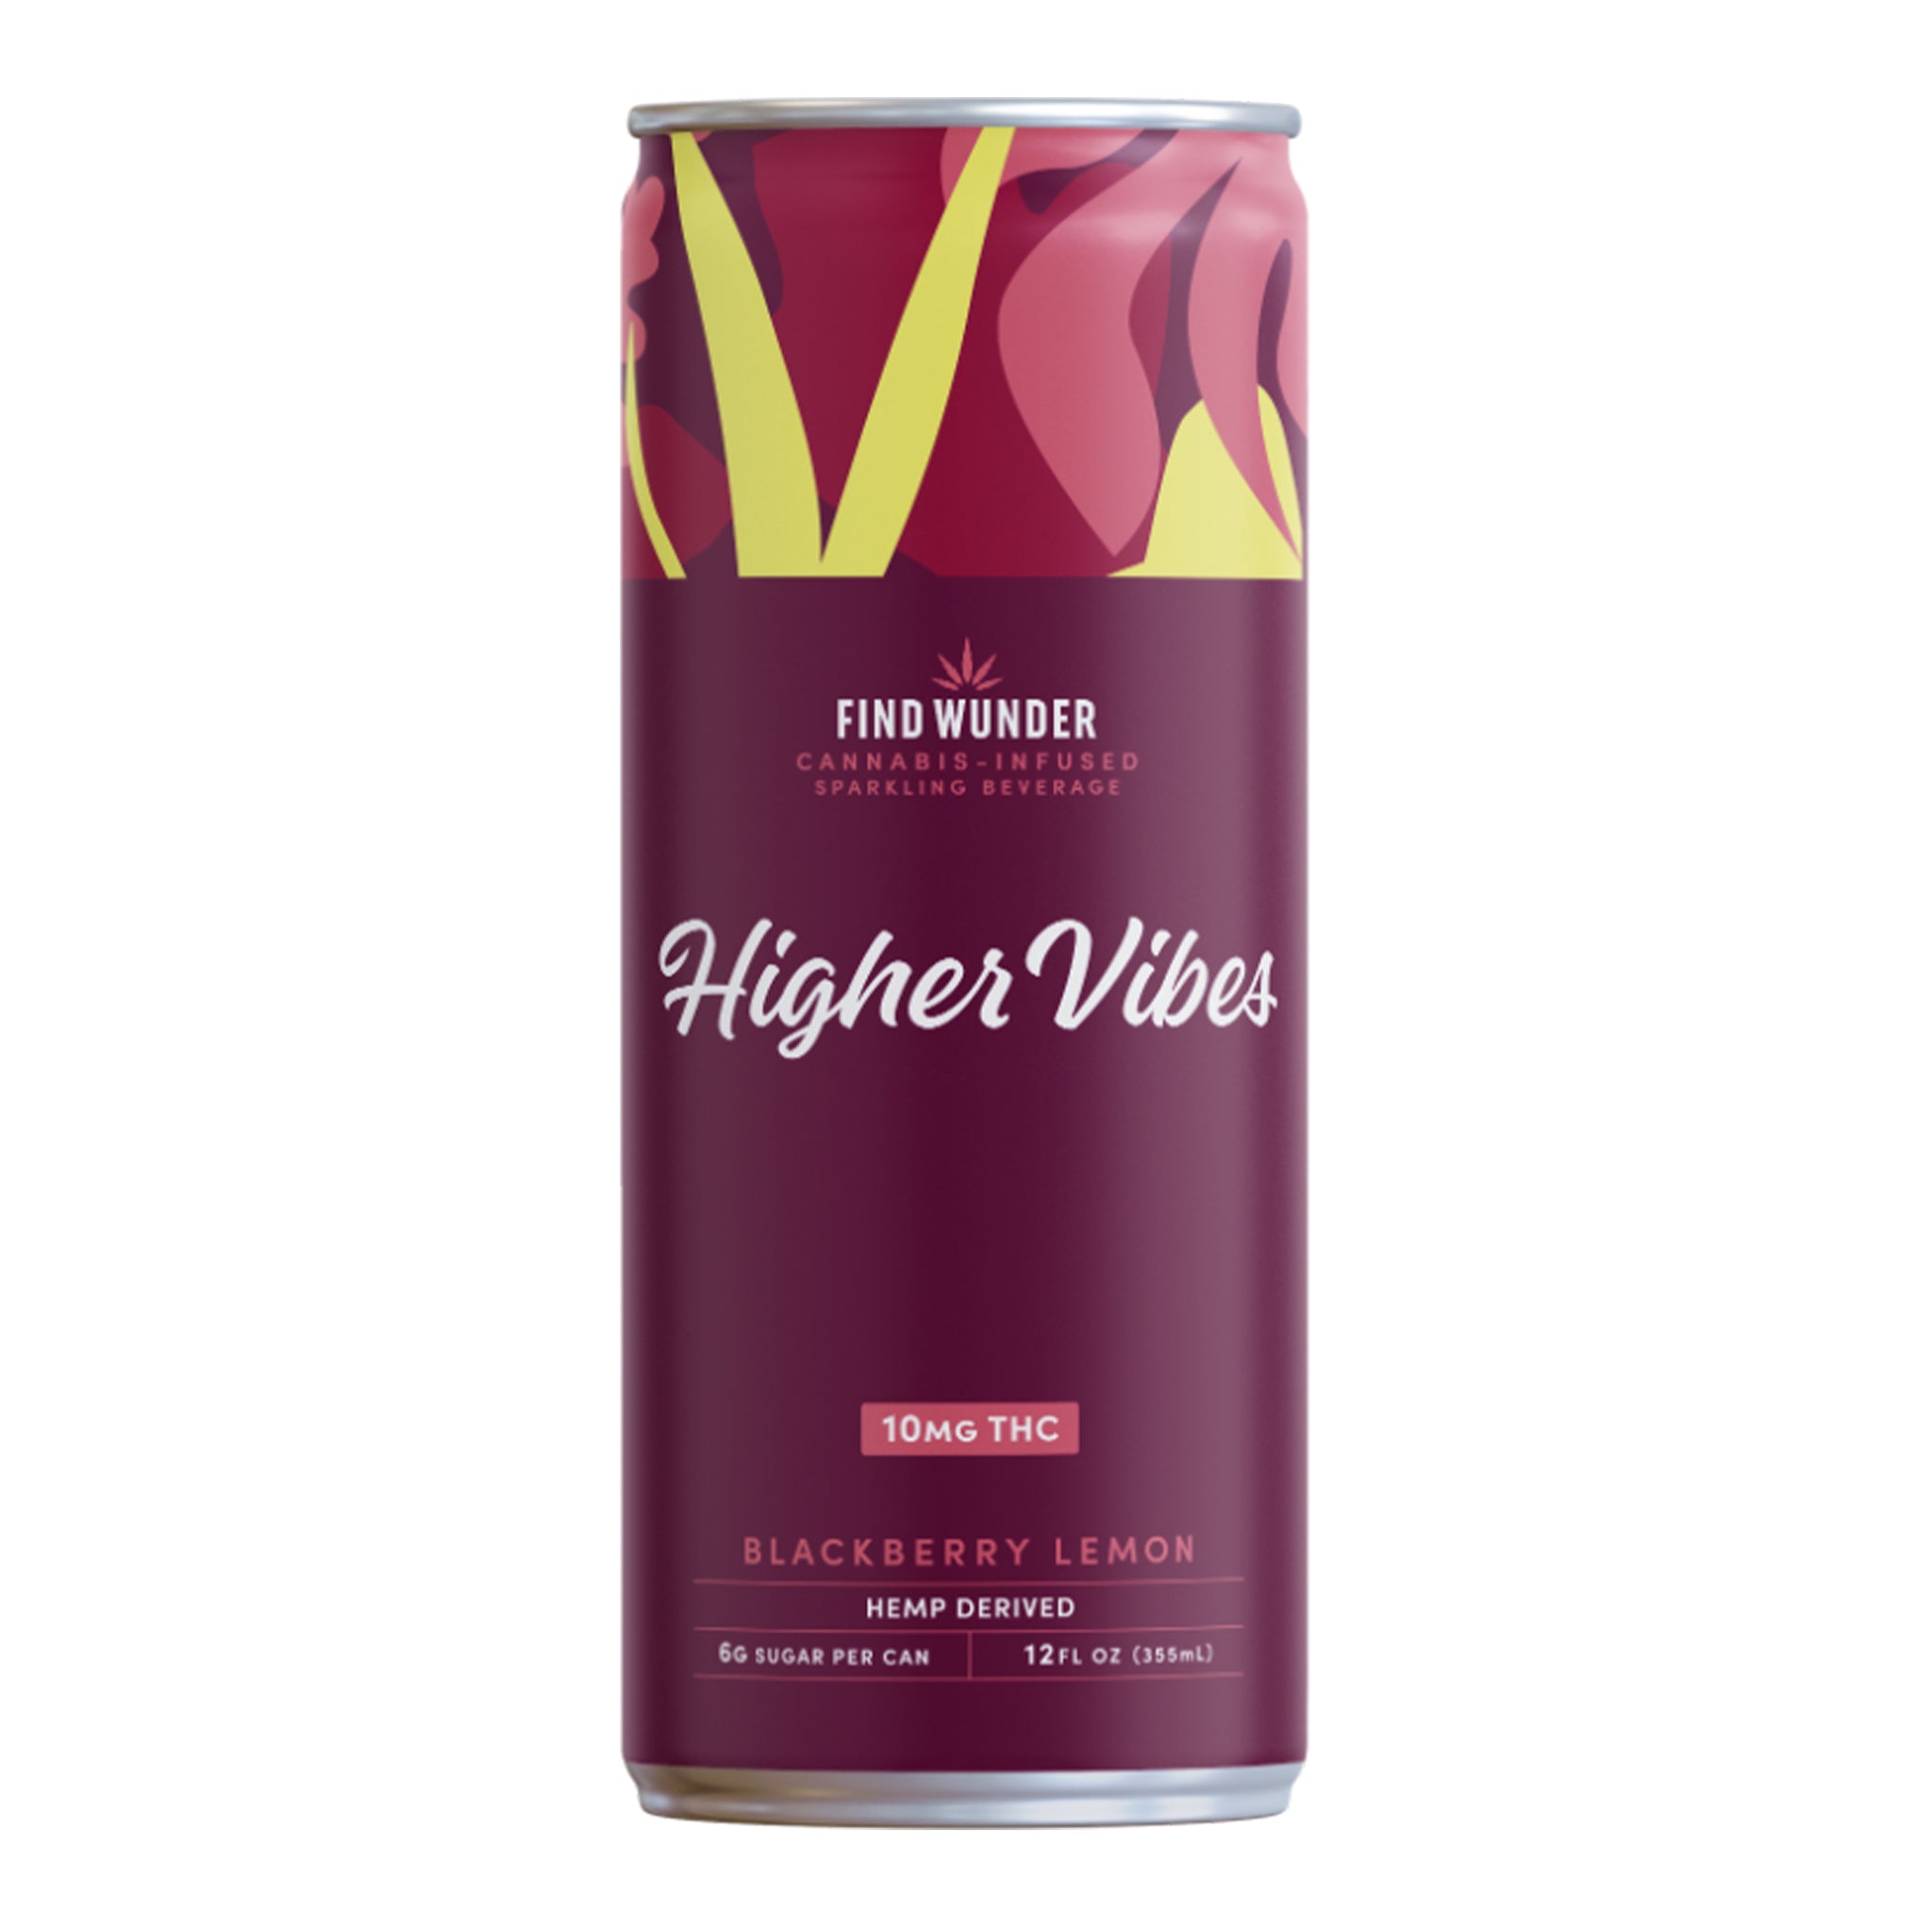 FIND WUNDER Higher Vibes Sparkling Beverage 10mg THC (3 Flavors)